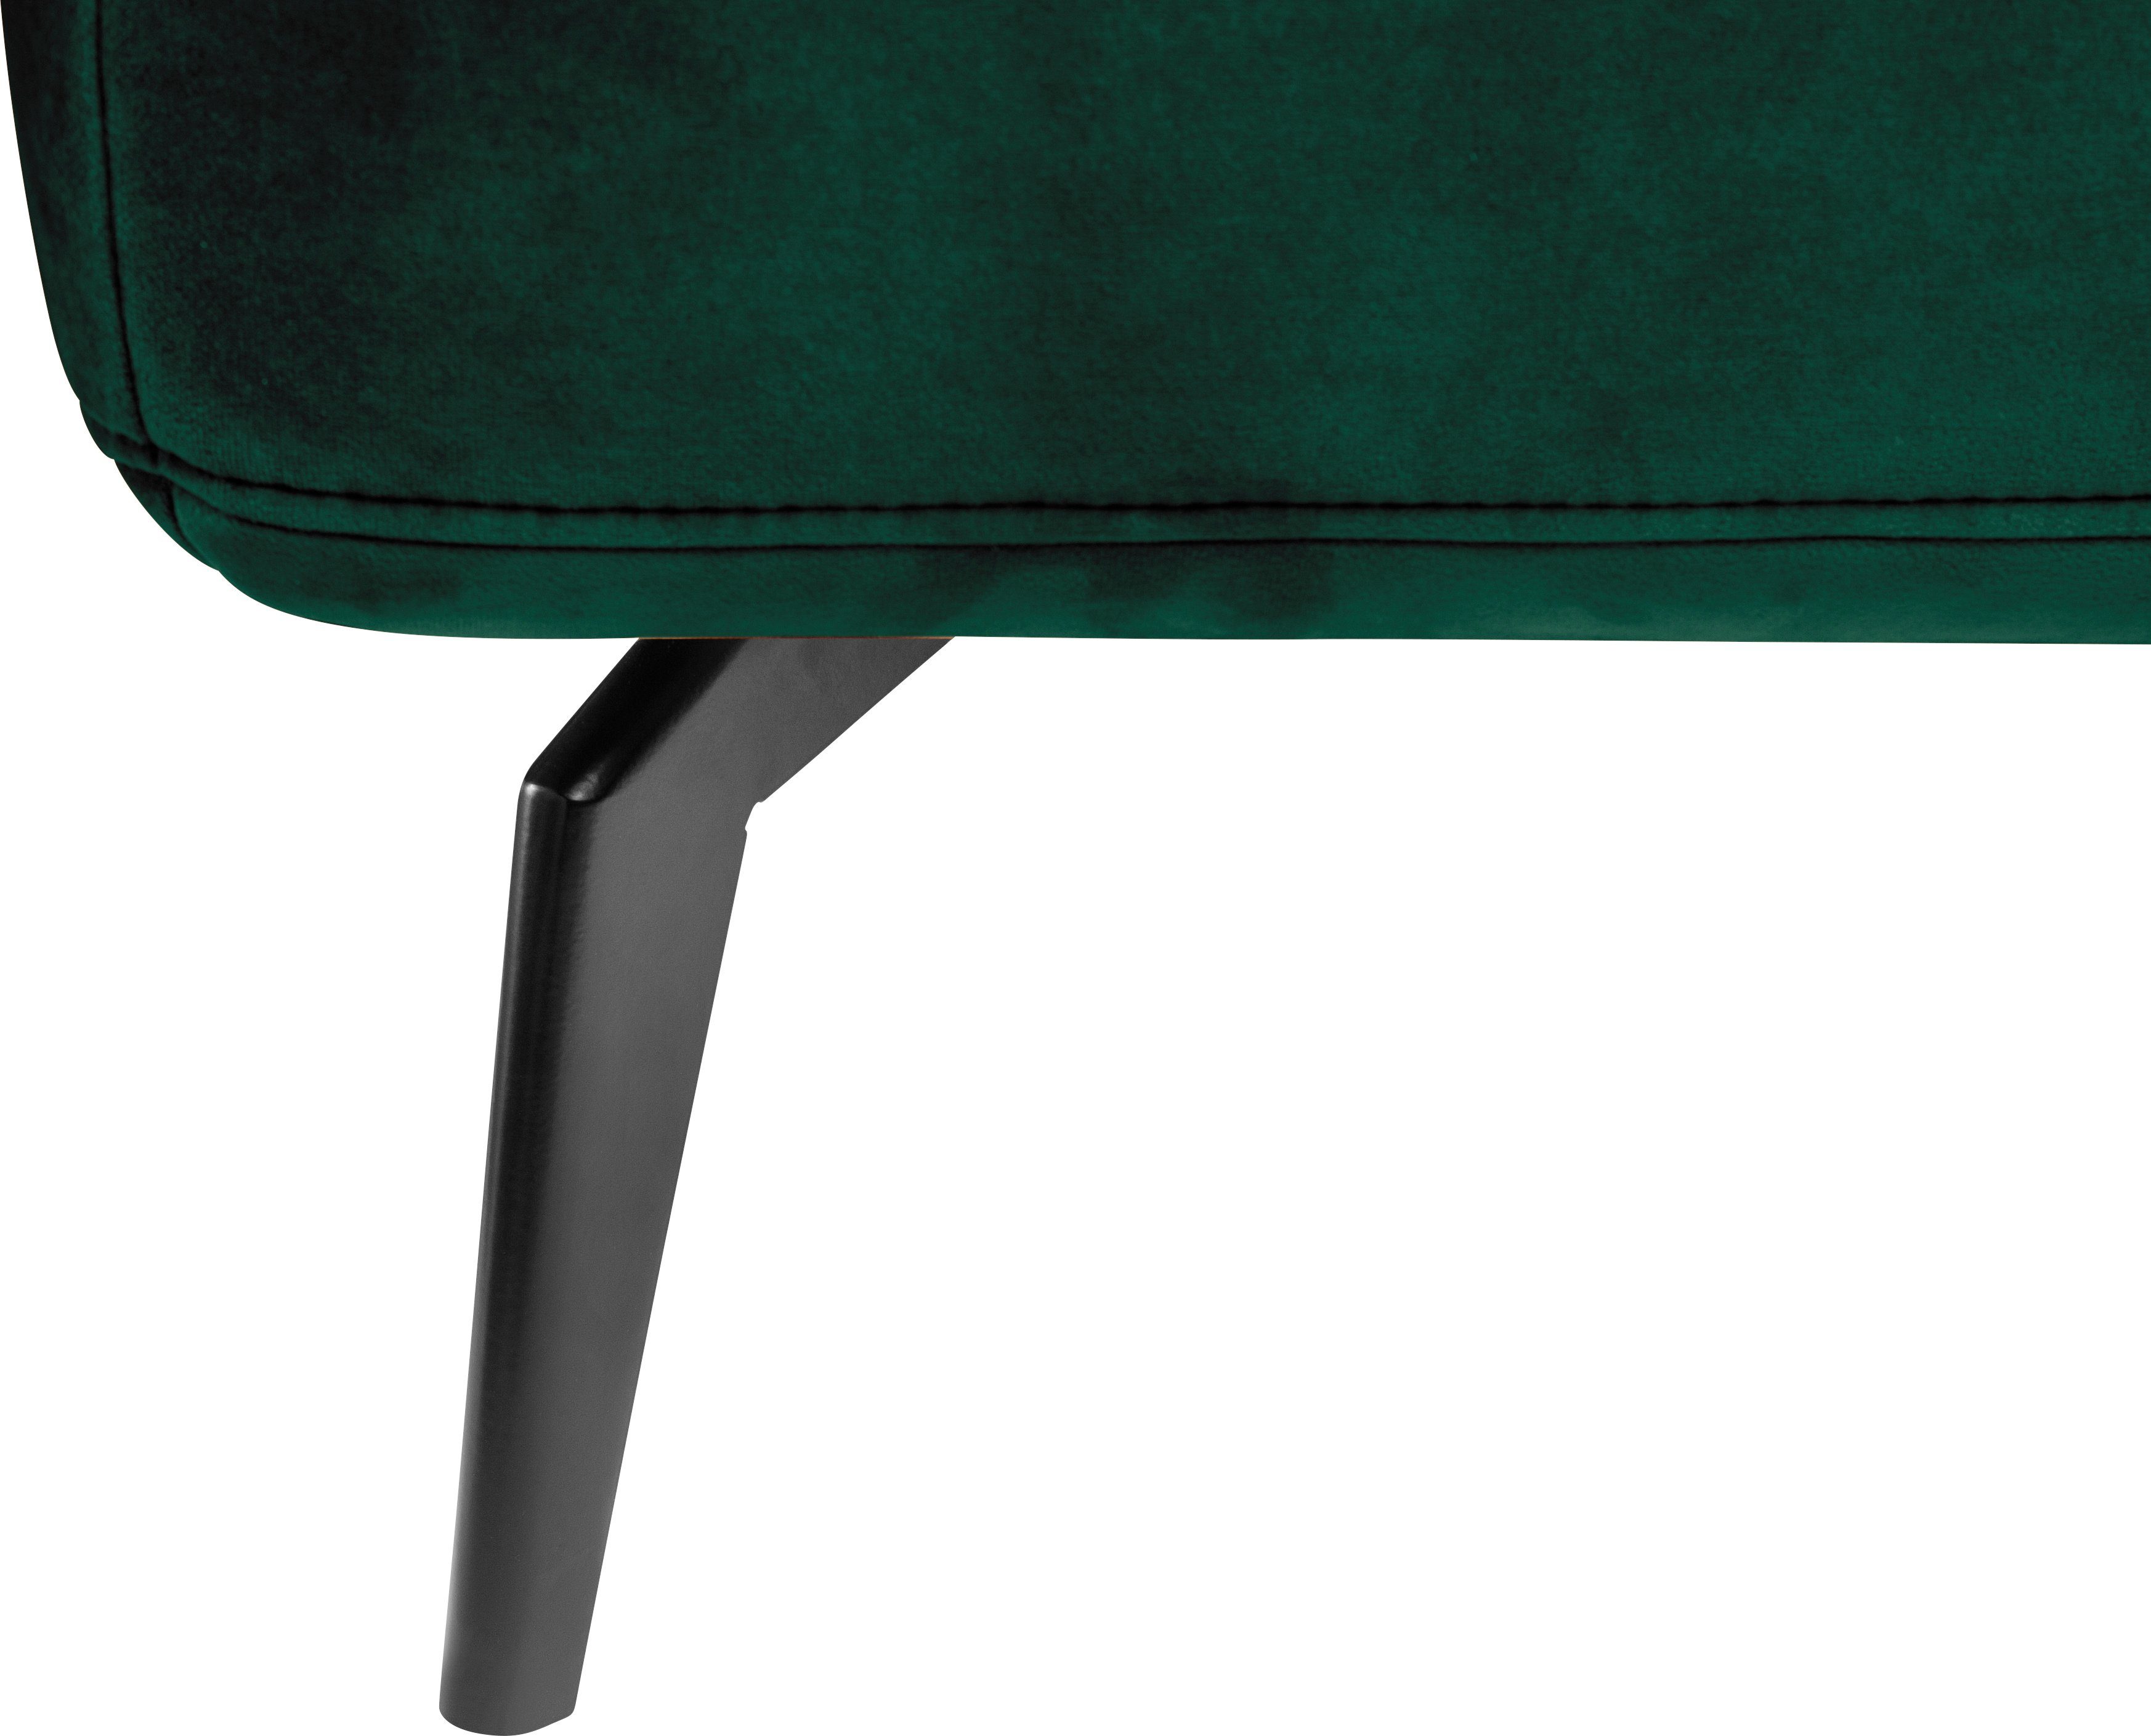 Sitztiefenverstellung by 4300, set SO dunkelgrün162/dunkelgrün38 one inklusive Ecksofa und Nierenkissen Musterring